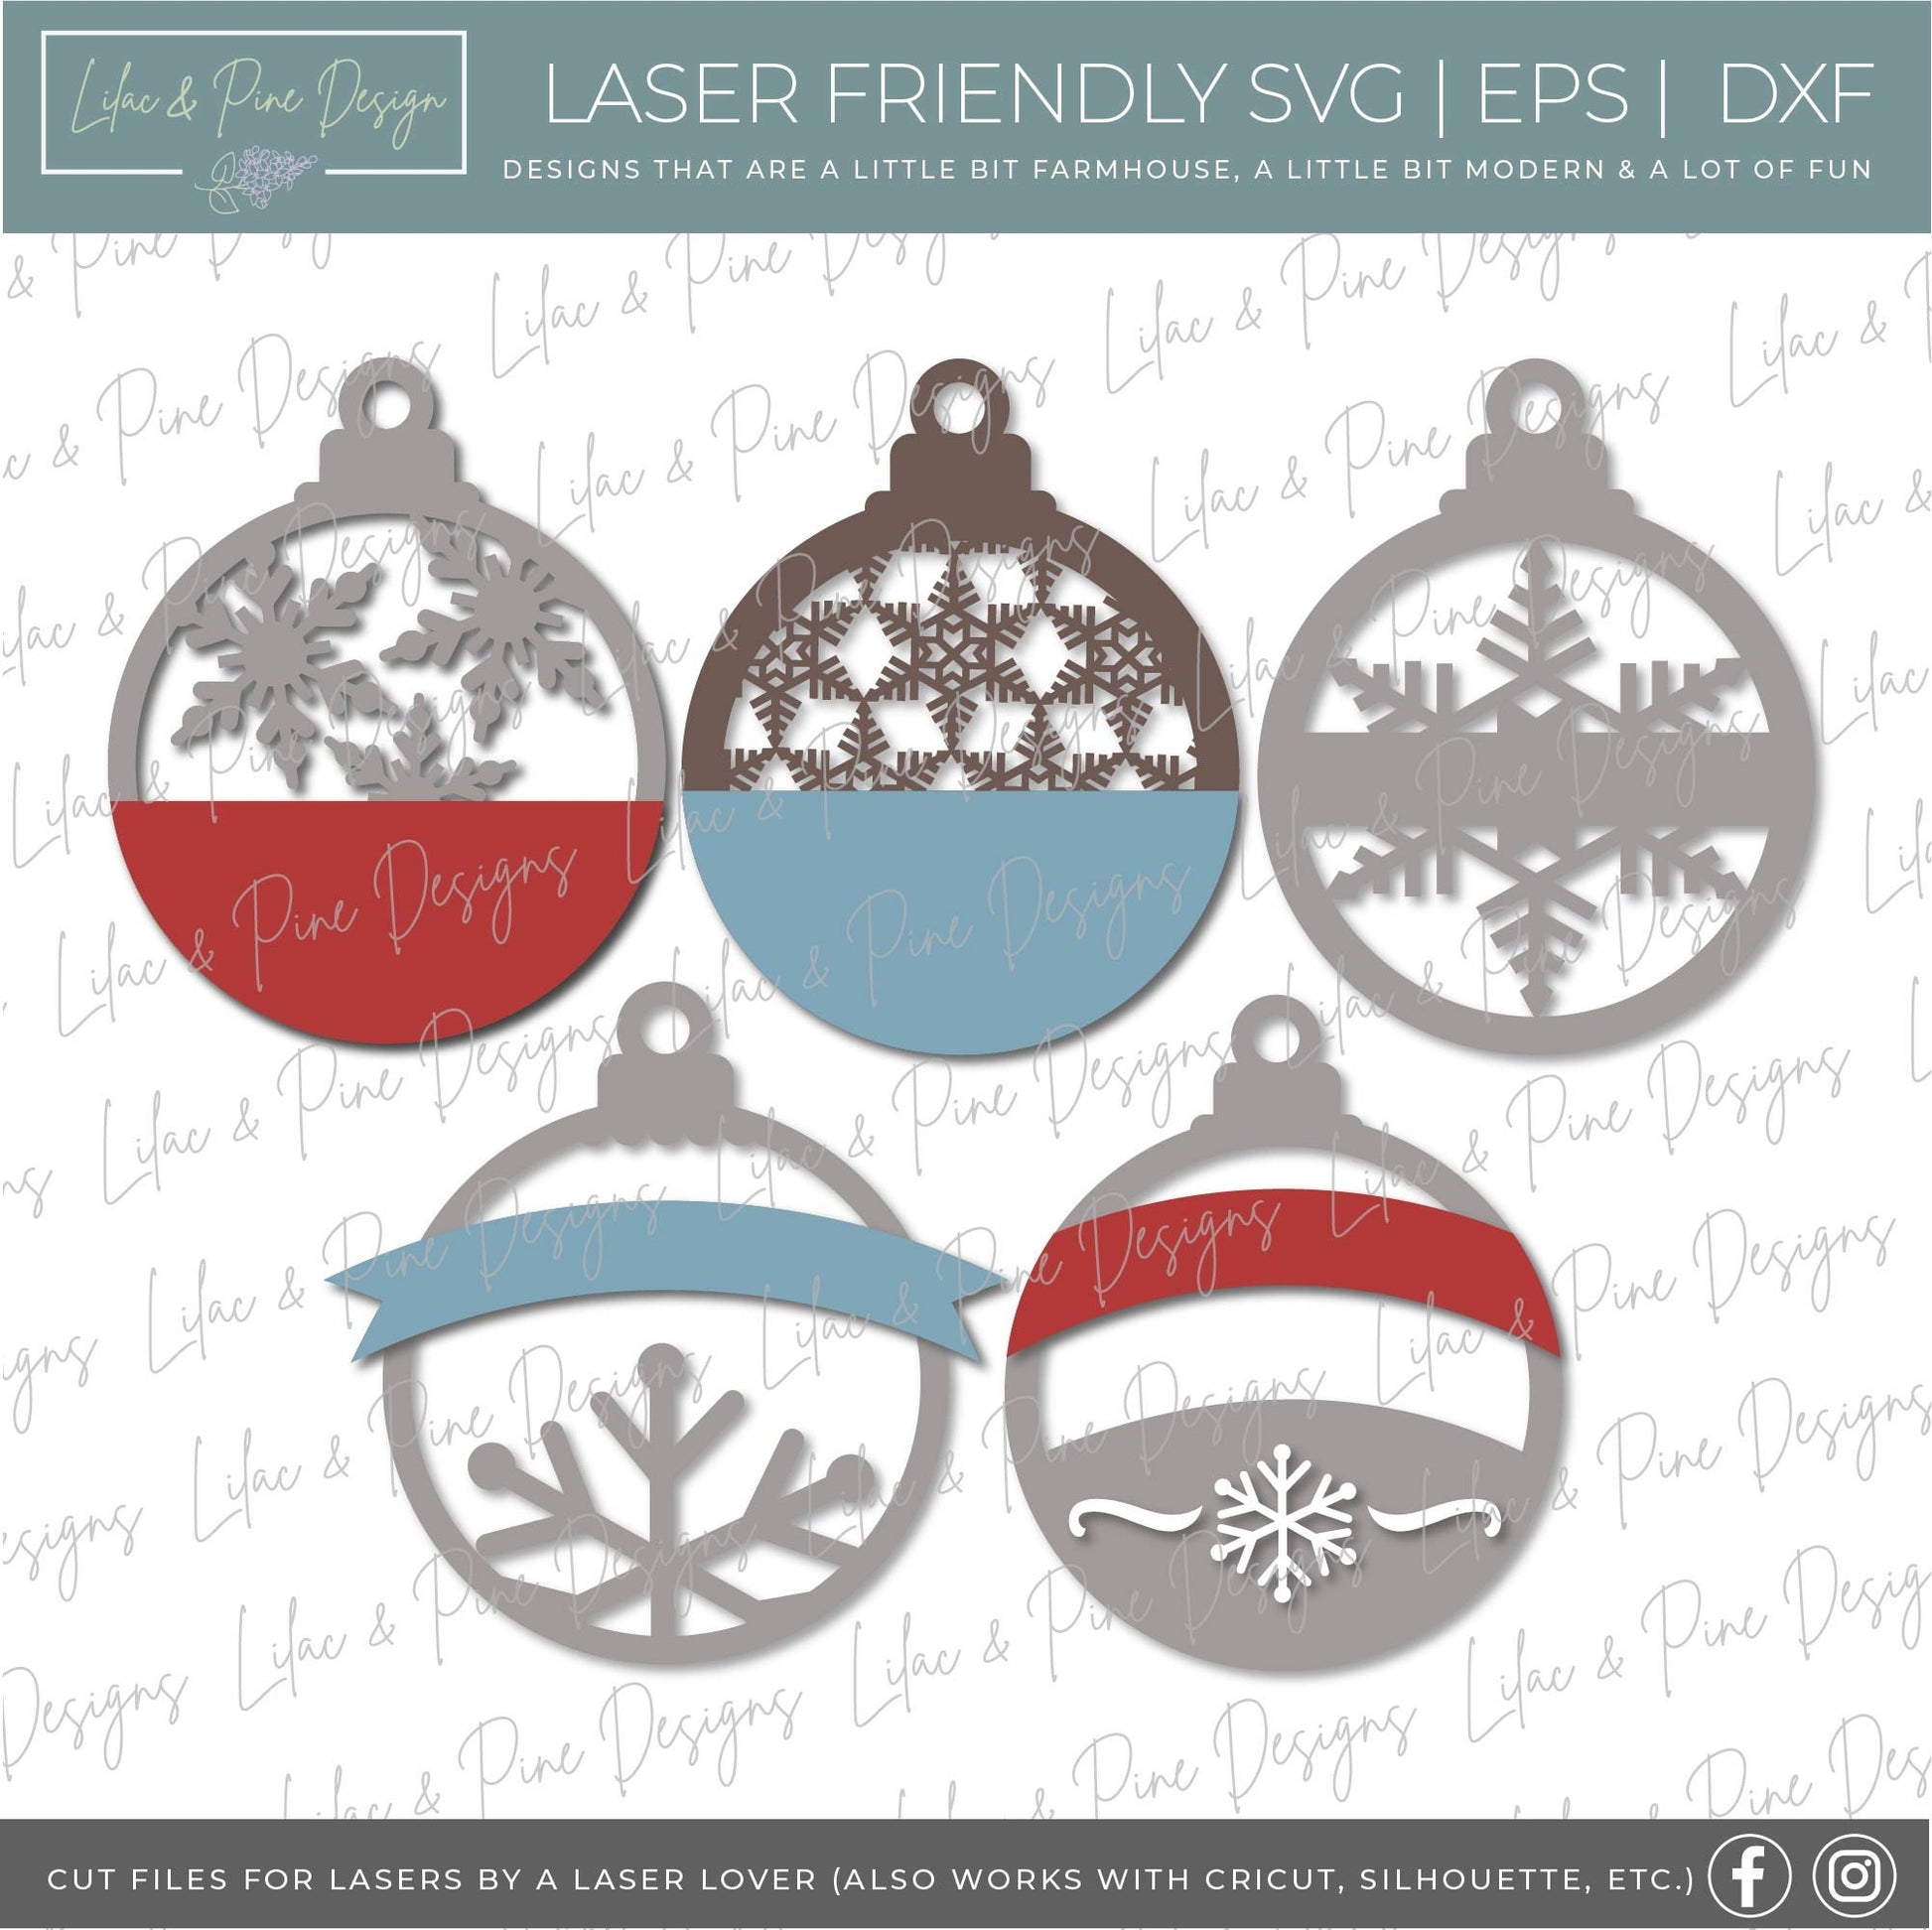 Christmas ornament bundle SVG, Snowflake ornament bundle SVG, laser ornament set svg, simple laser ornament svg, laser SVG, Glowforge file